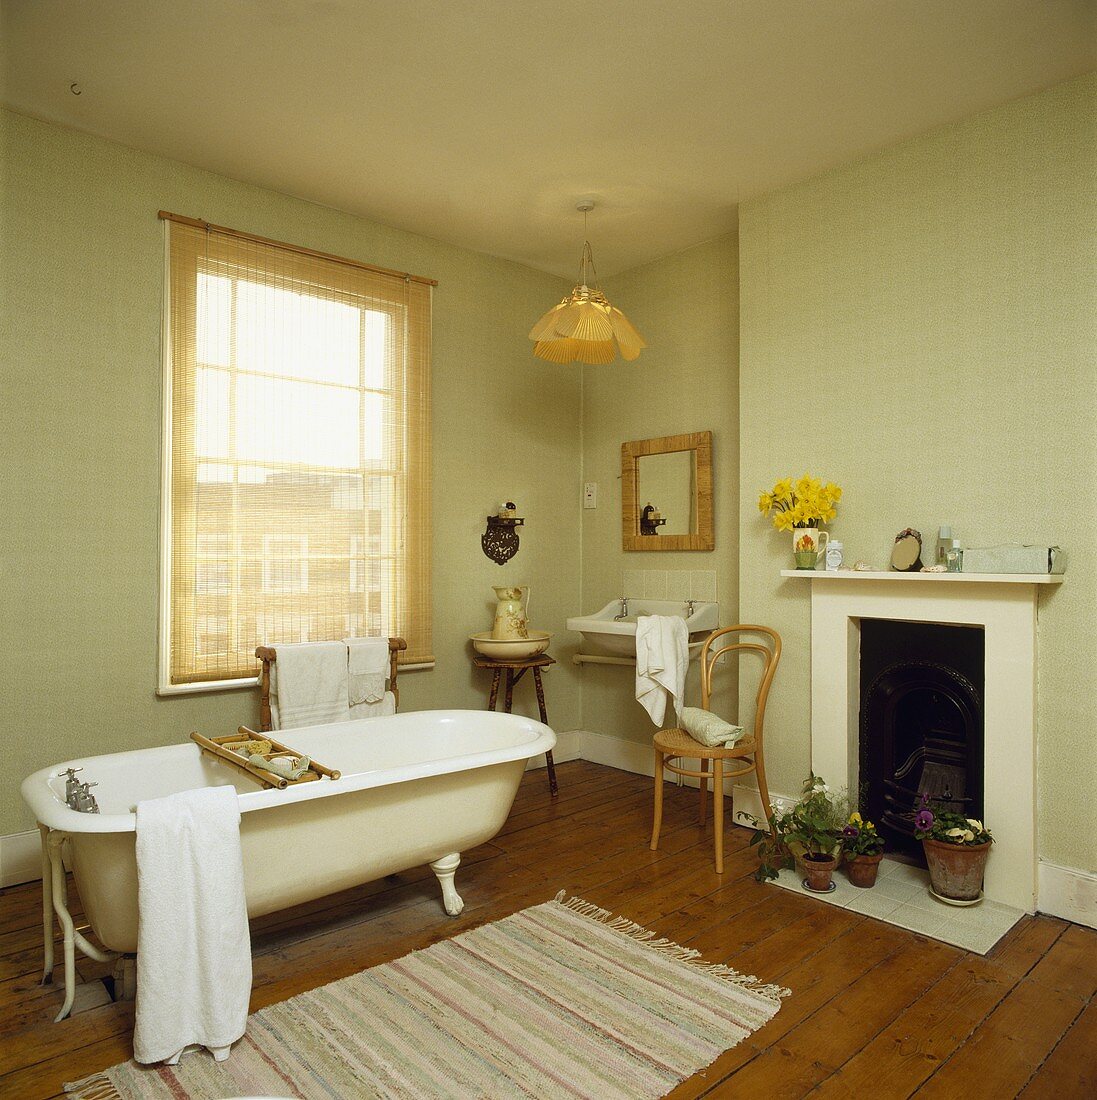 Ein lindgrünes Badezimmer mit Holzboden, Kamin und einer frei stehenden Badewanne vor dem Fenster